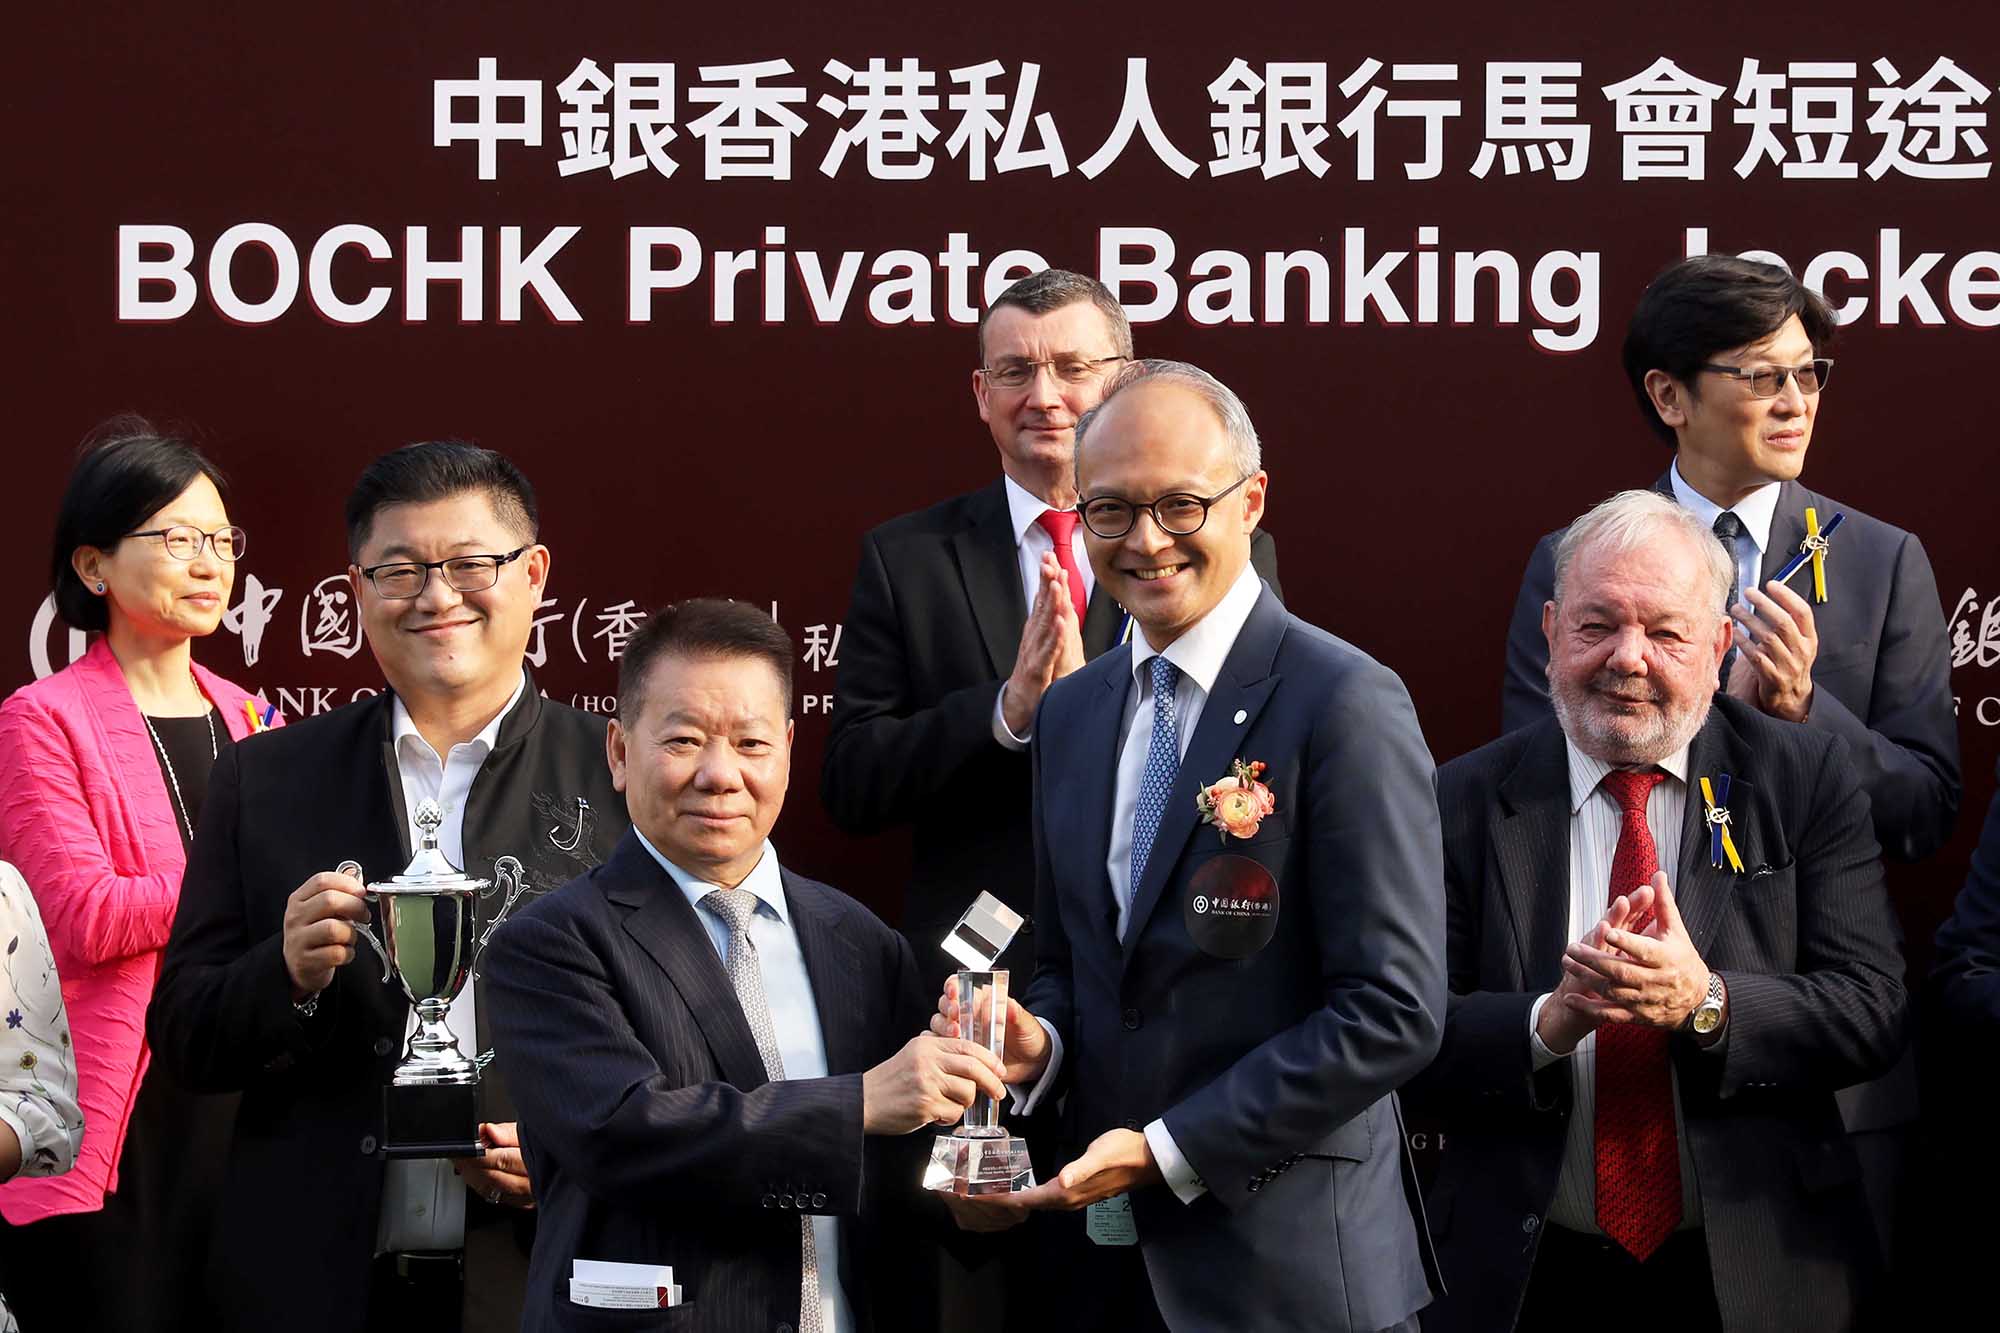 中國銀行（香港）有限公司私人銀行總經理甘宇文頒發水晶獎座予「金鑽貴人」的練馬師文家良。